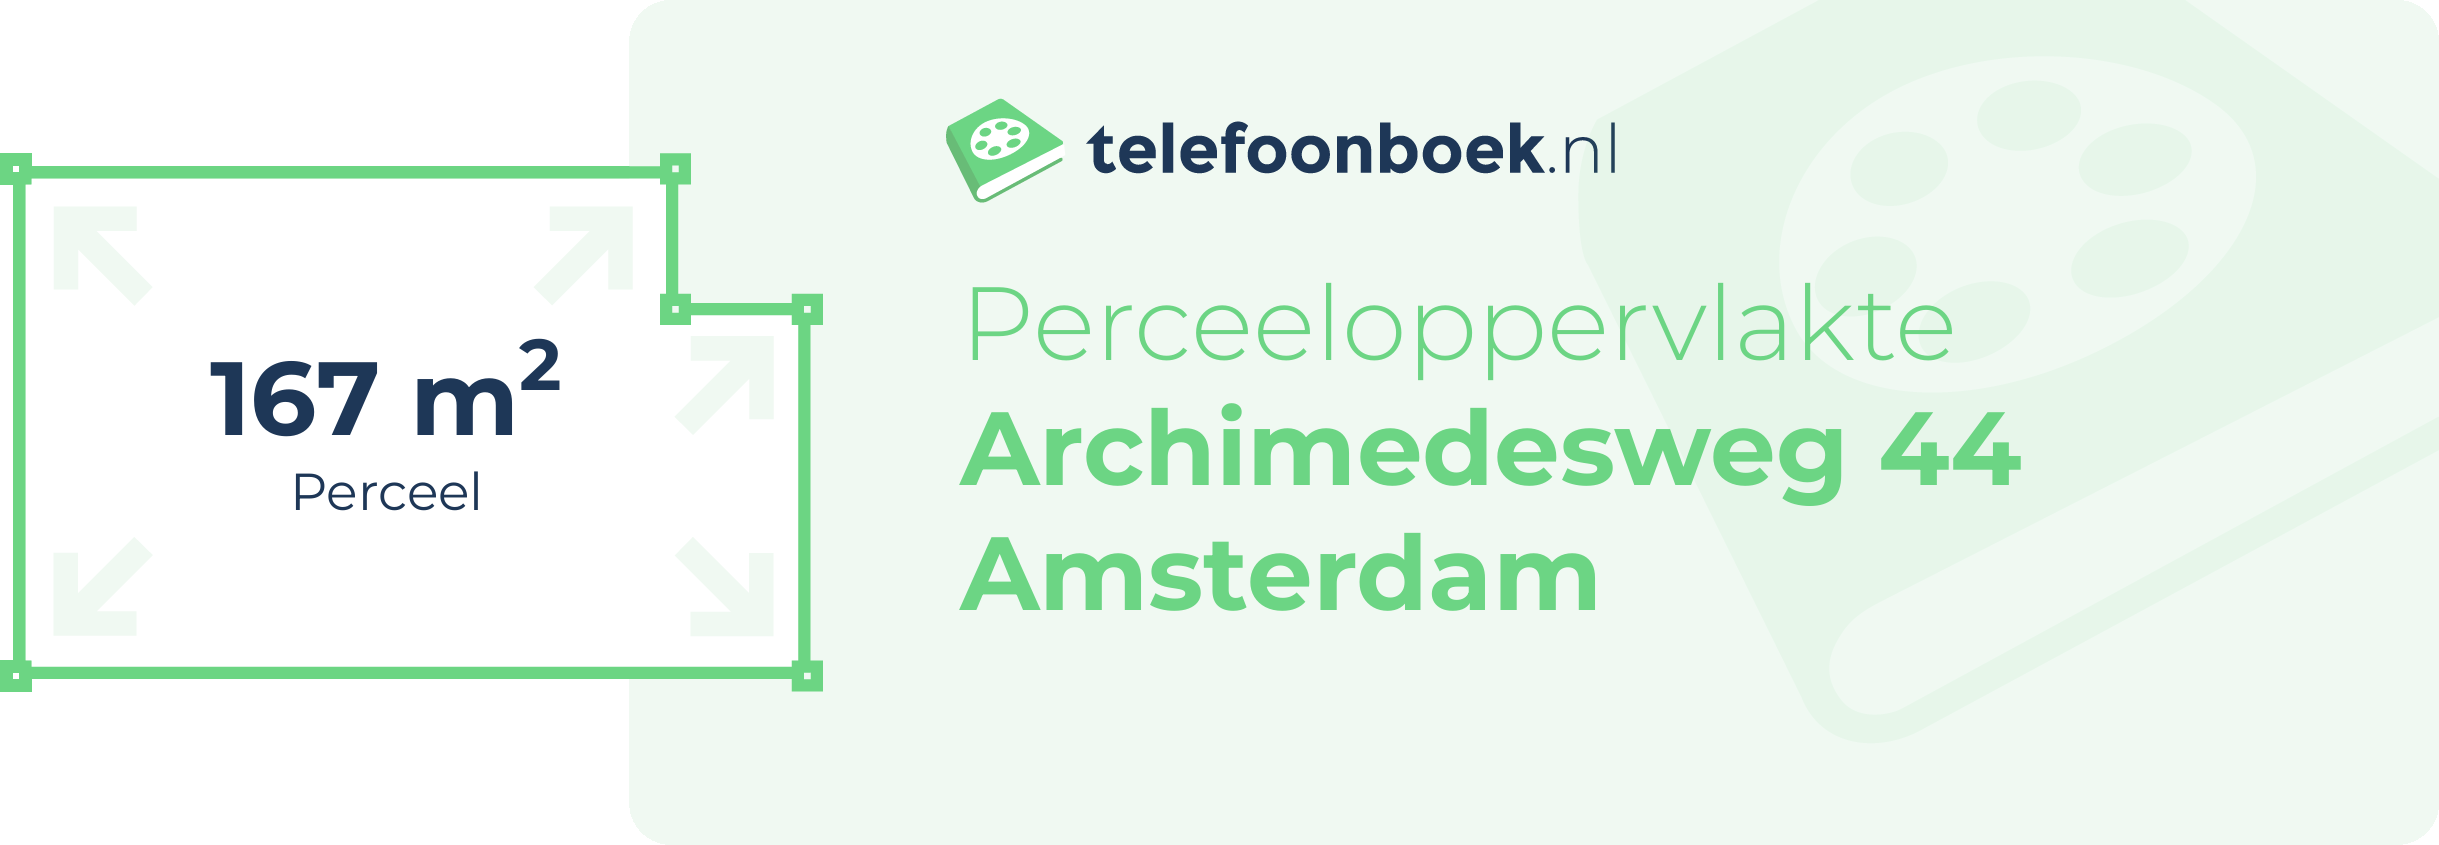 Perceeloppervlakte Archimedesweg 44 Amsterdam